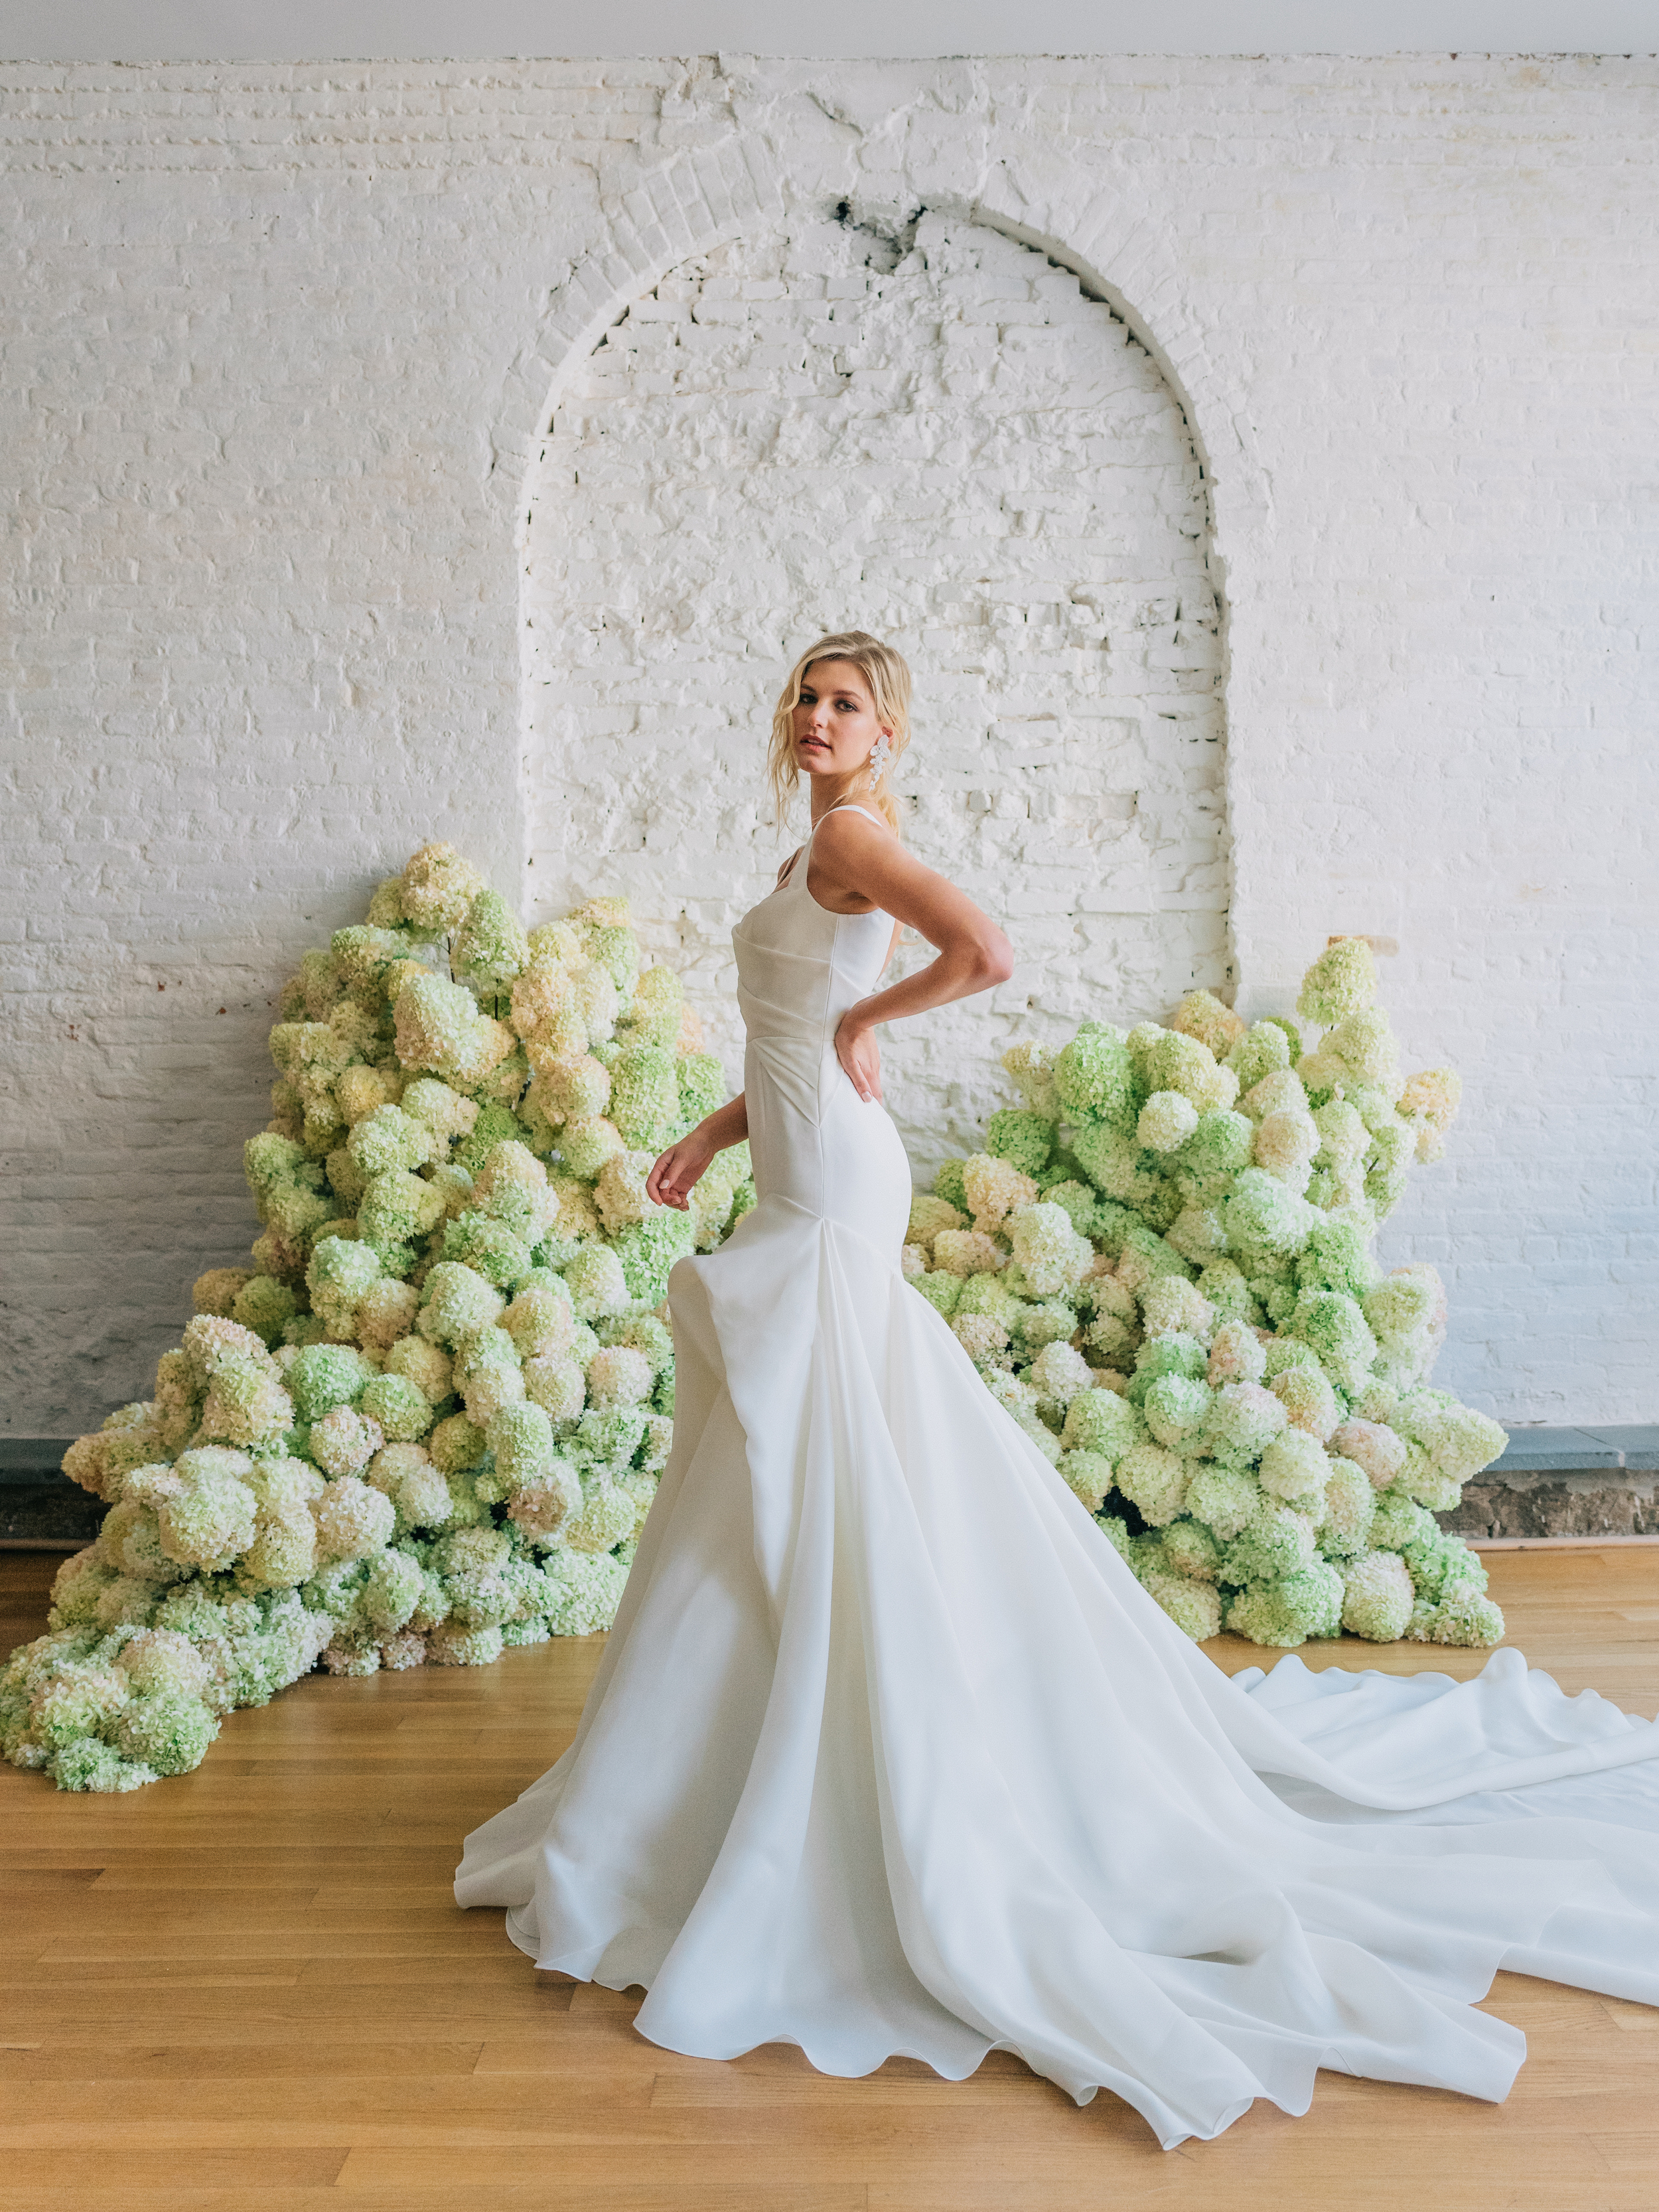 Maquette fit and flare silk gazar wedding gown by bridal designer Carol Hannah5.jpg